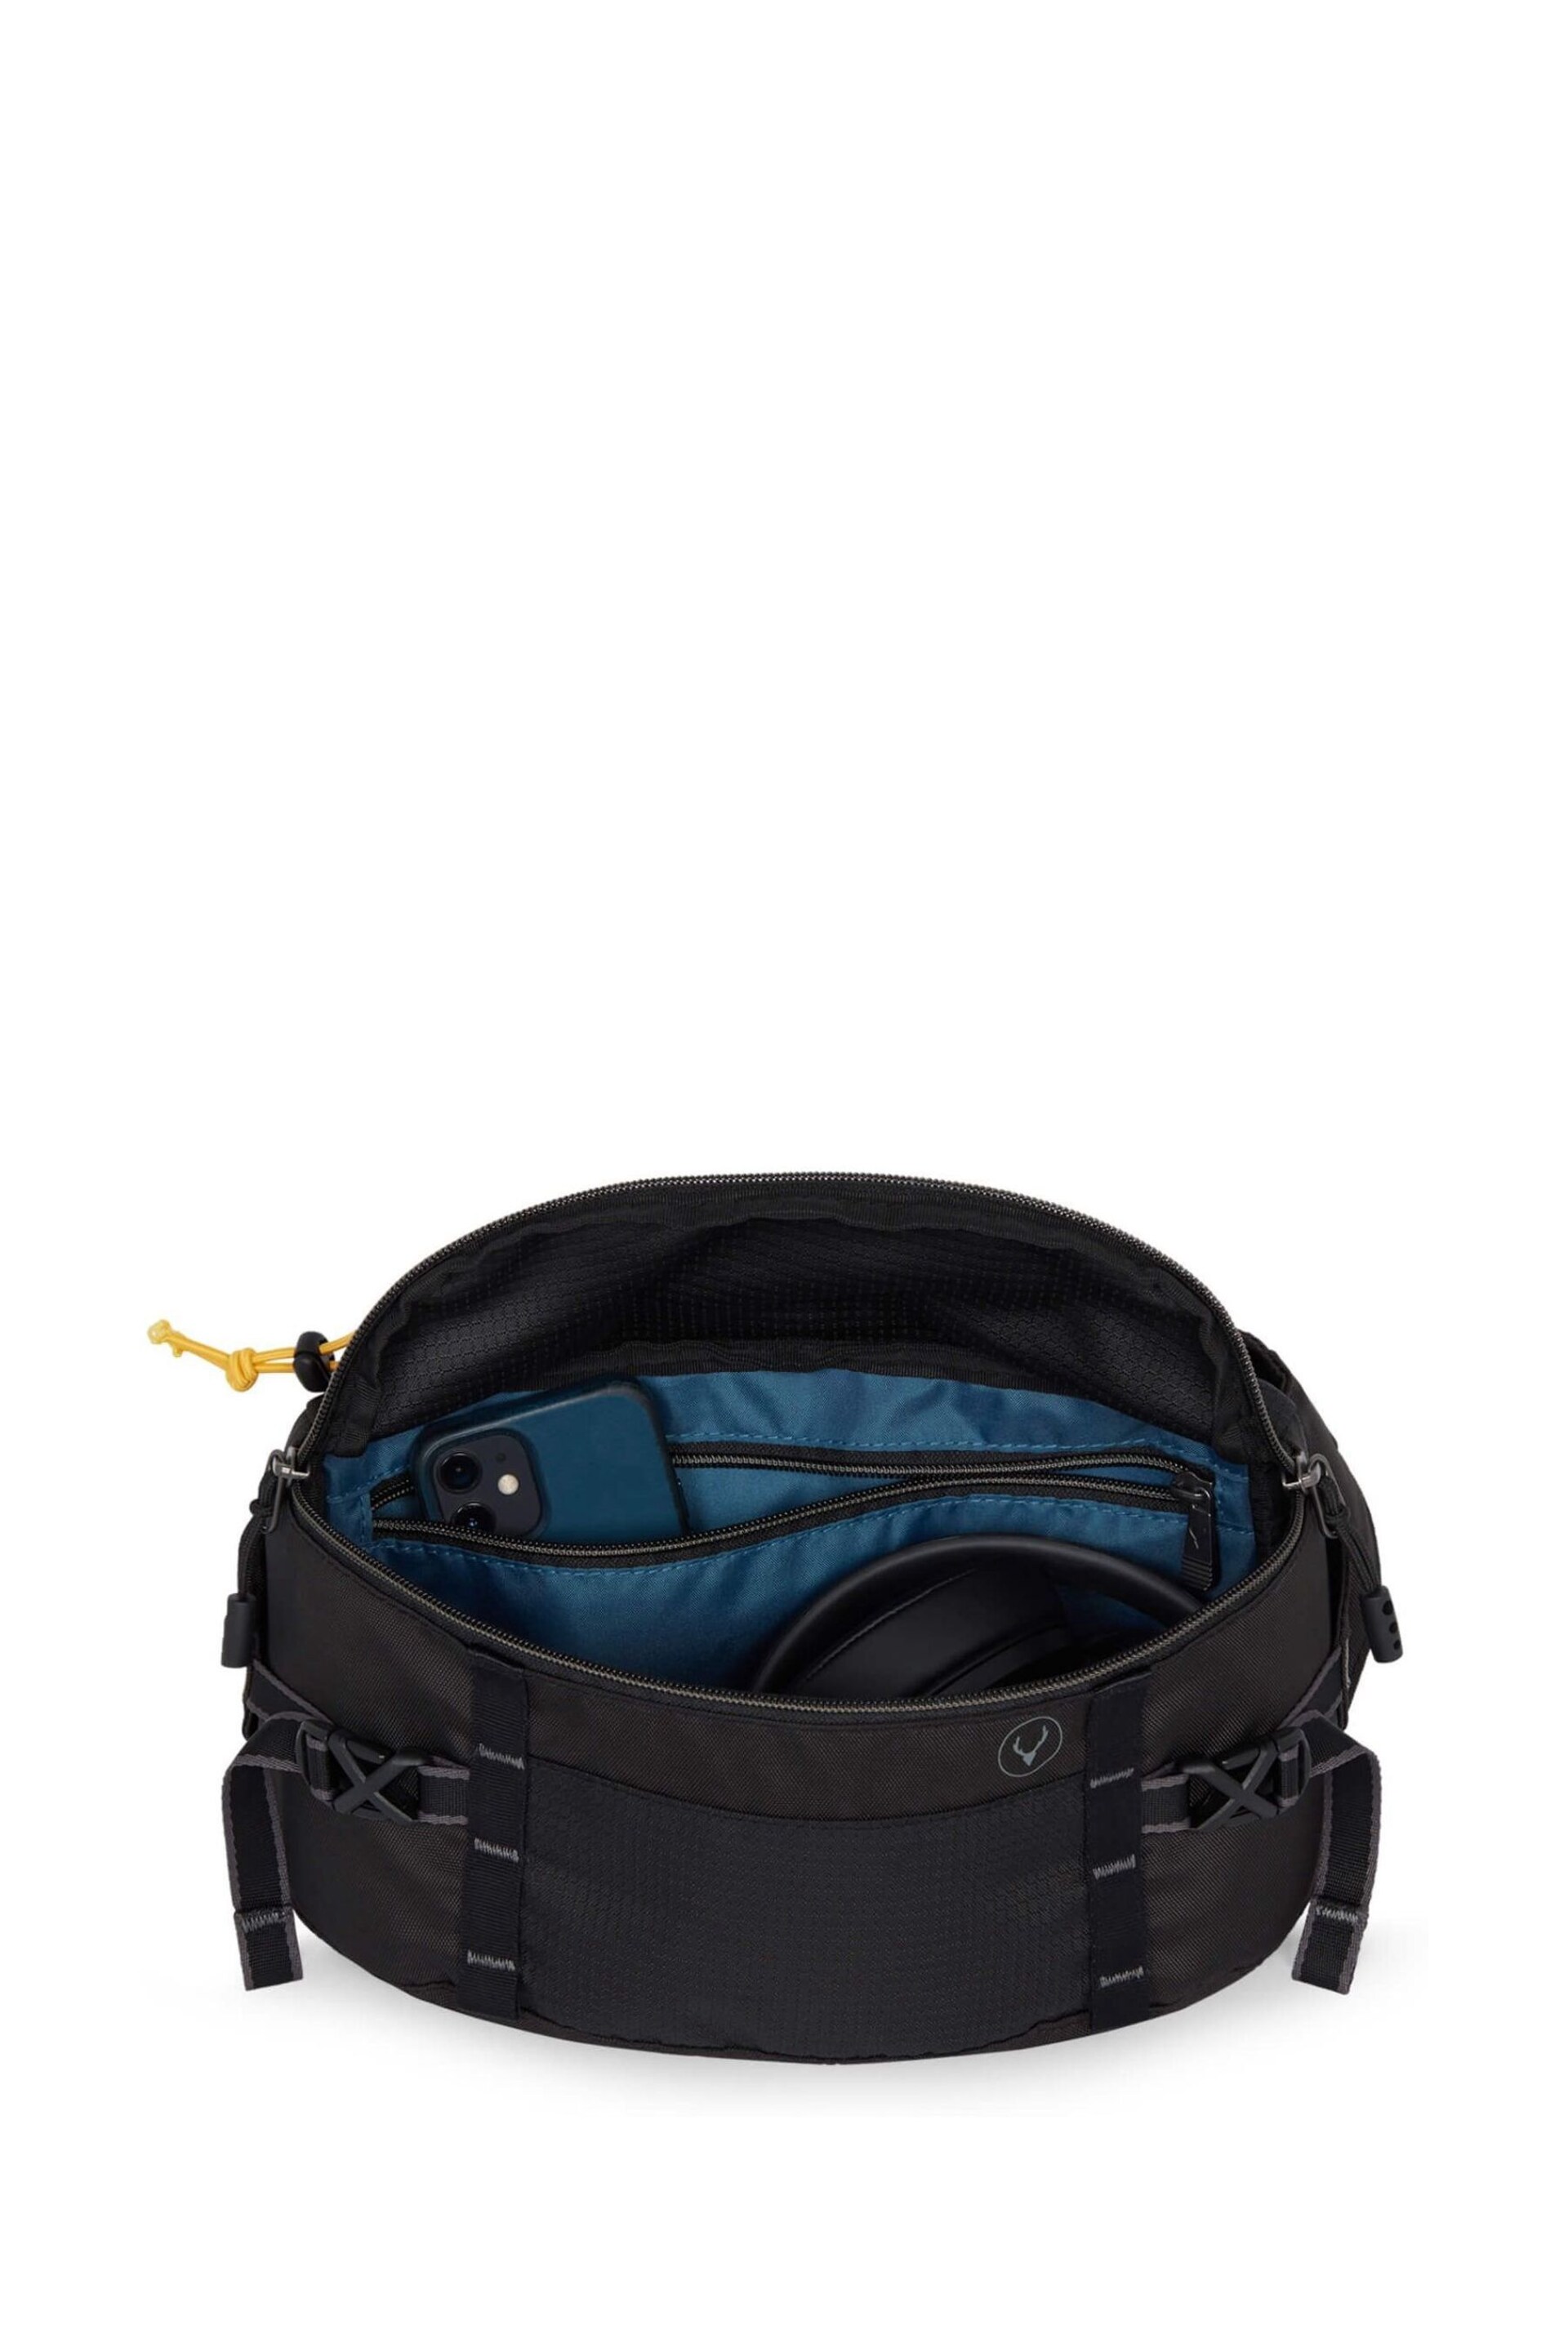 Antler Bamburgh Belt Black Bag - Image 4 of 5